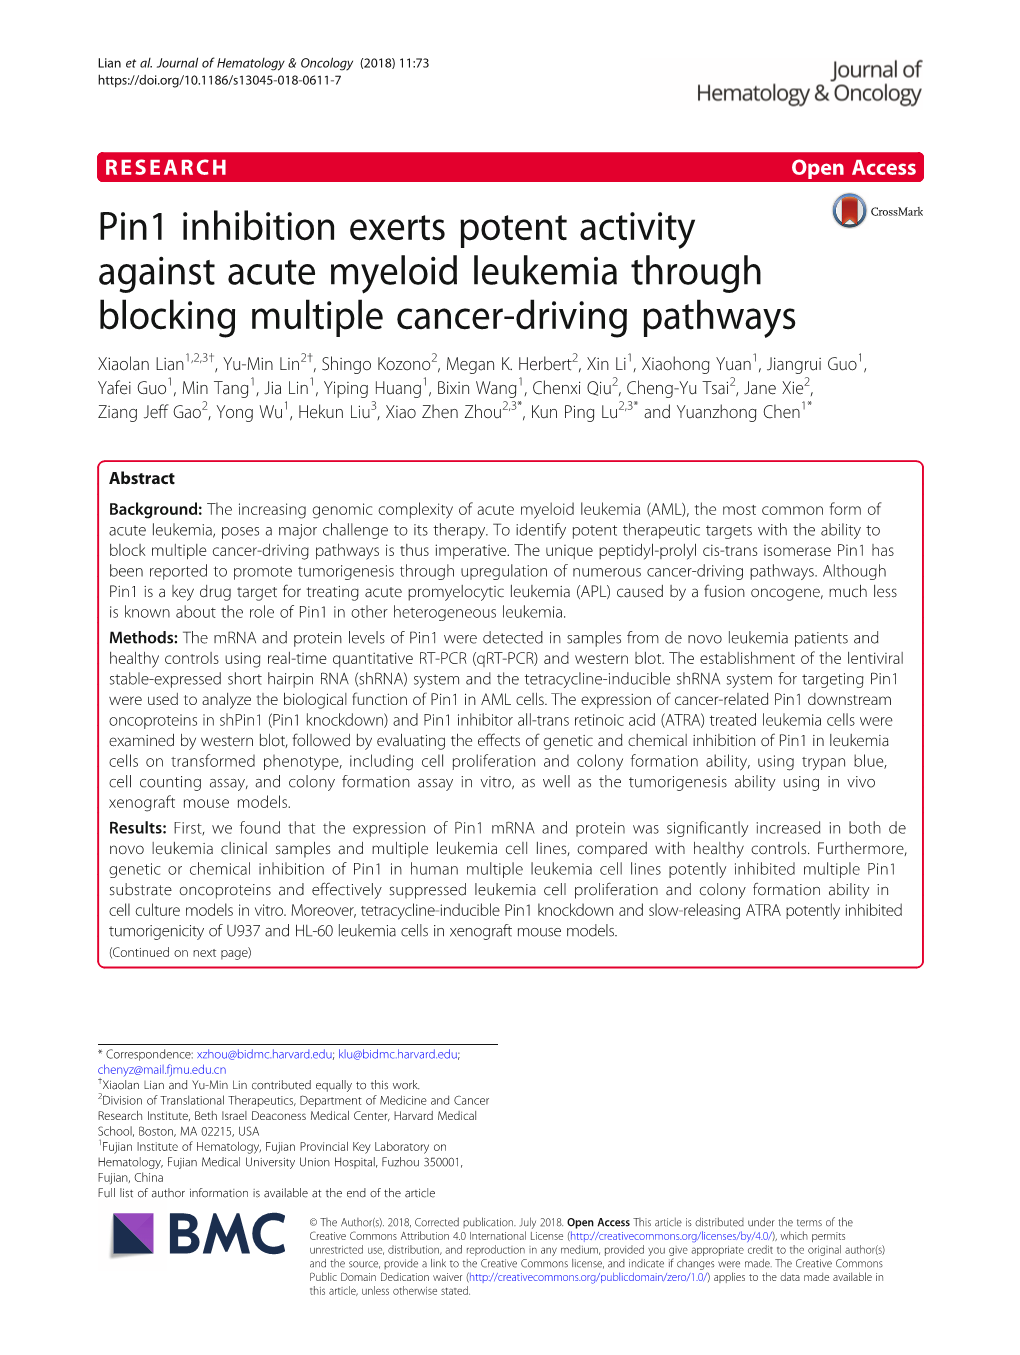 Pin1 Inhibition Exerts Potent Activity Against Acute Myeloid Leukemia